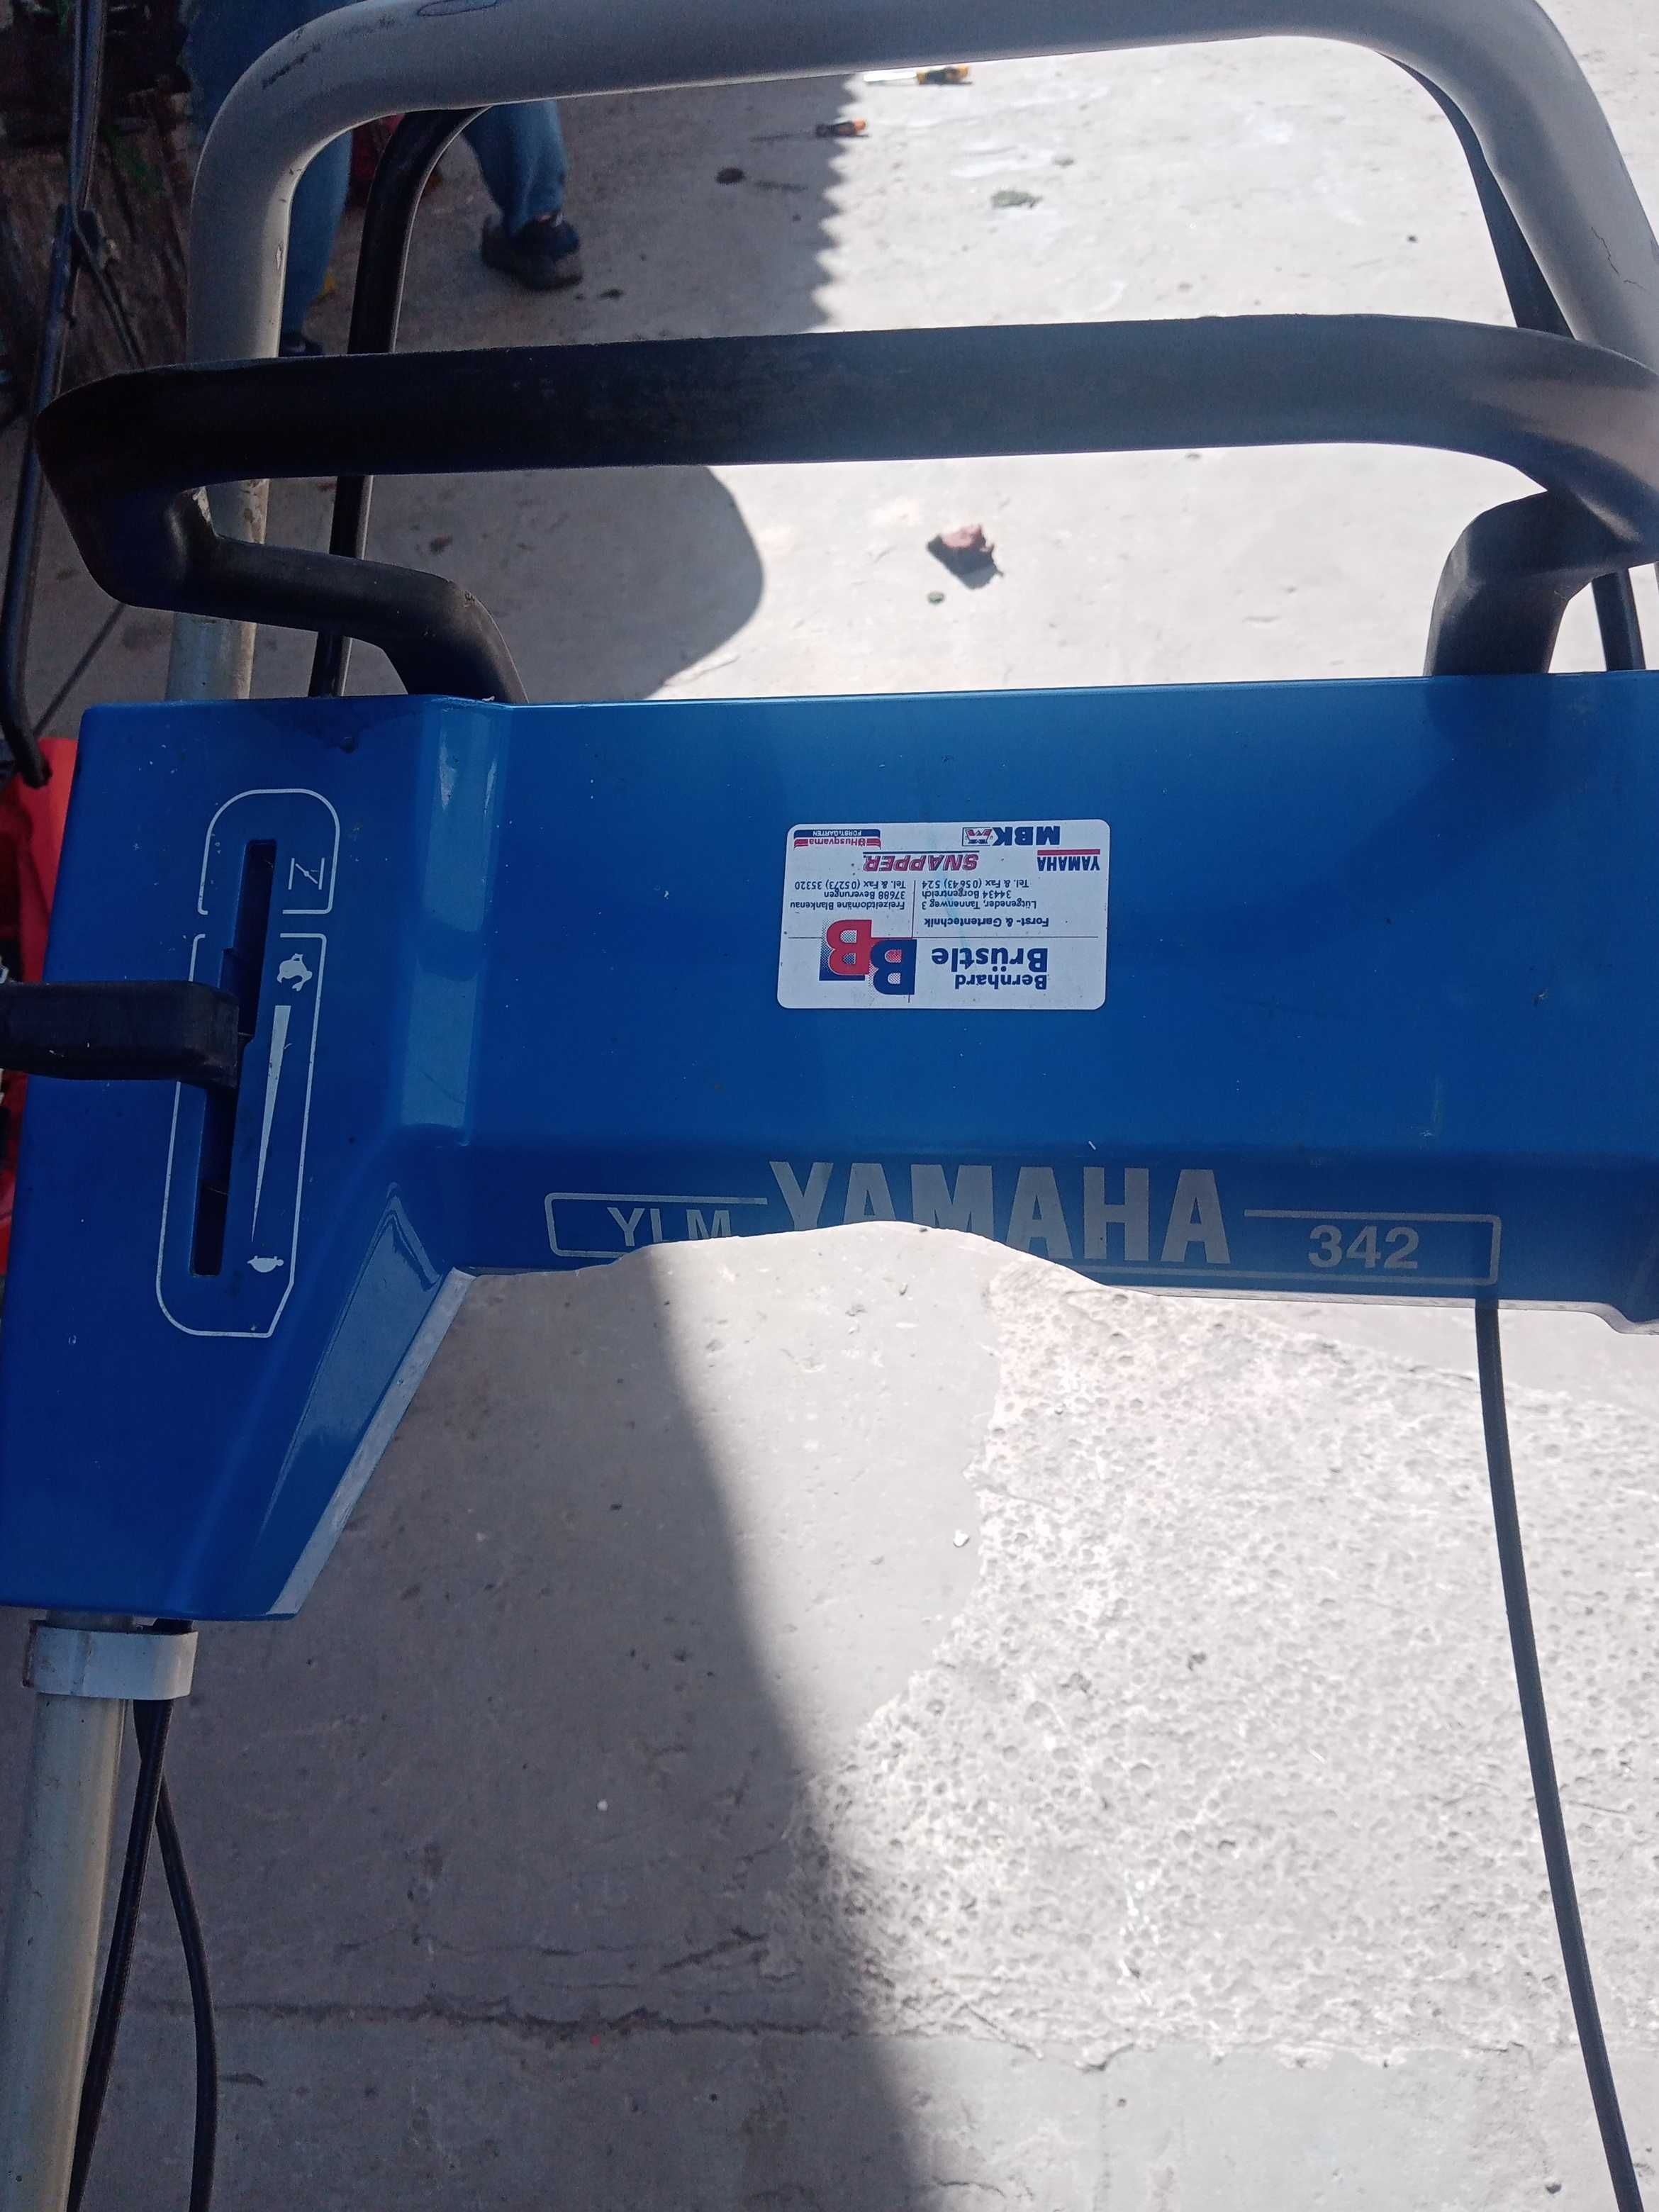 Бензинова, самохідна газонокосарка Yamaha.